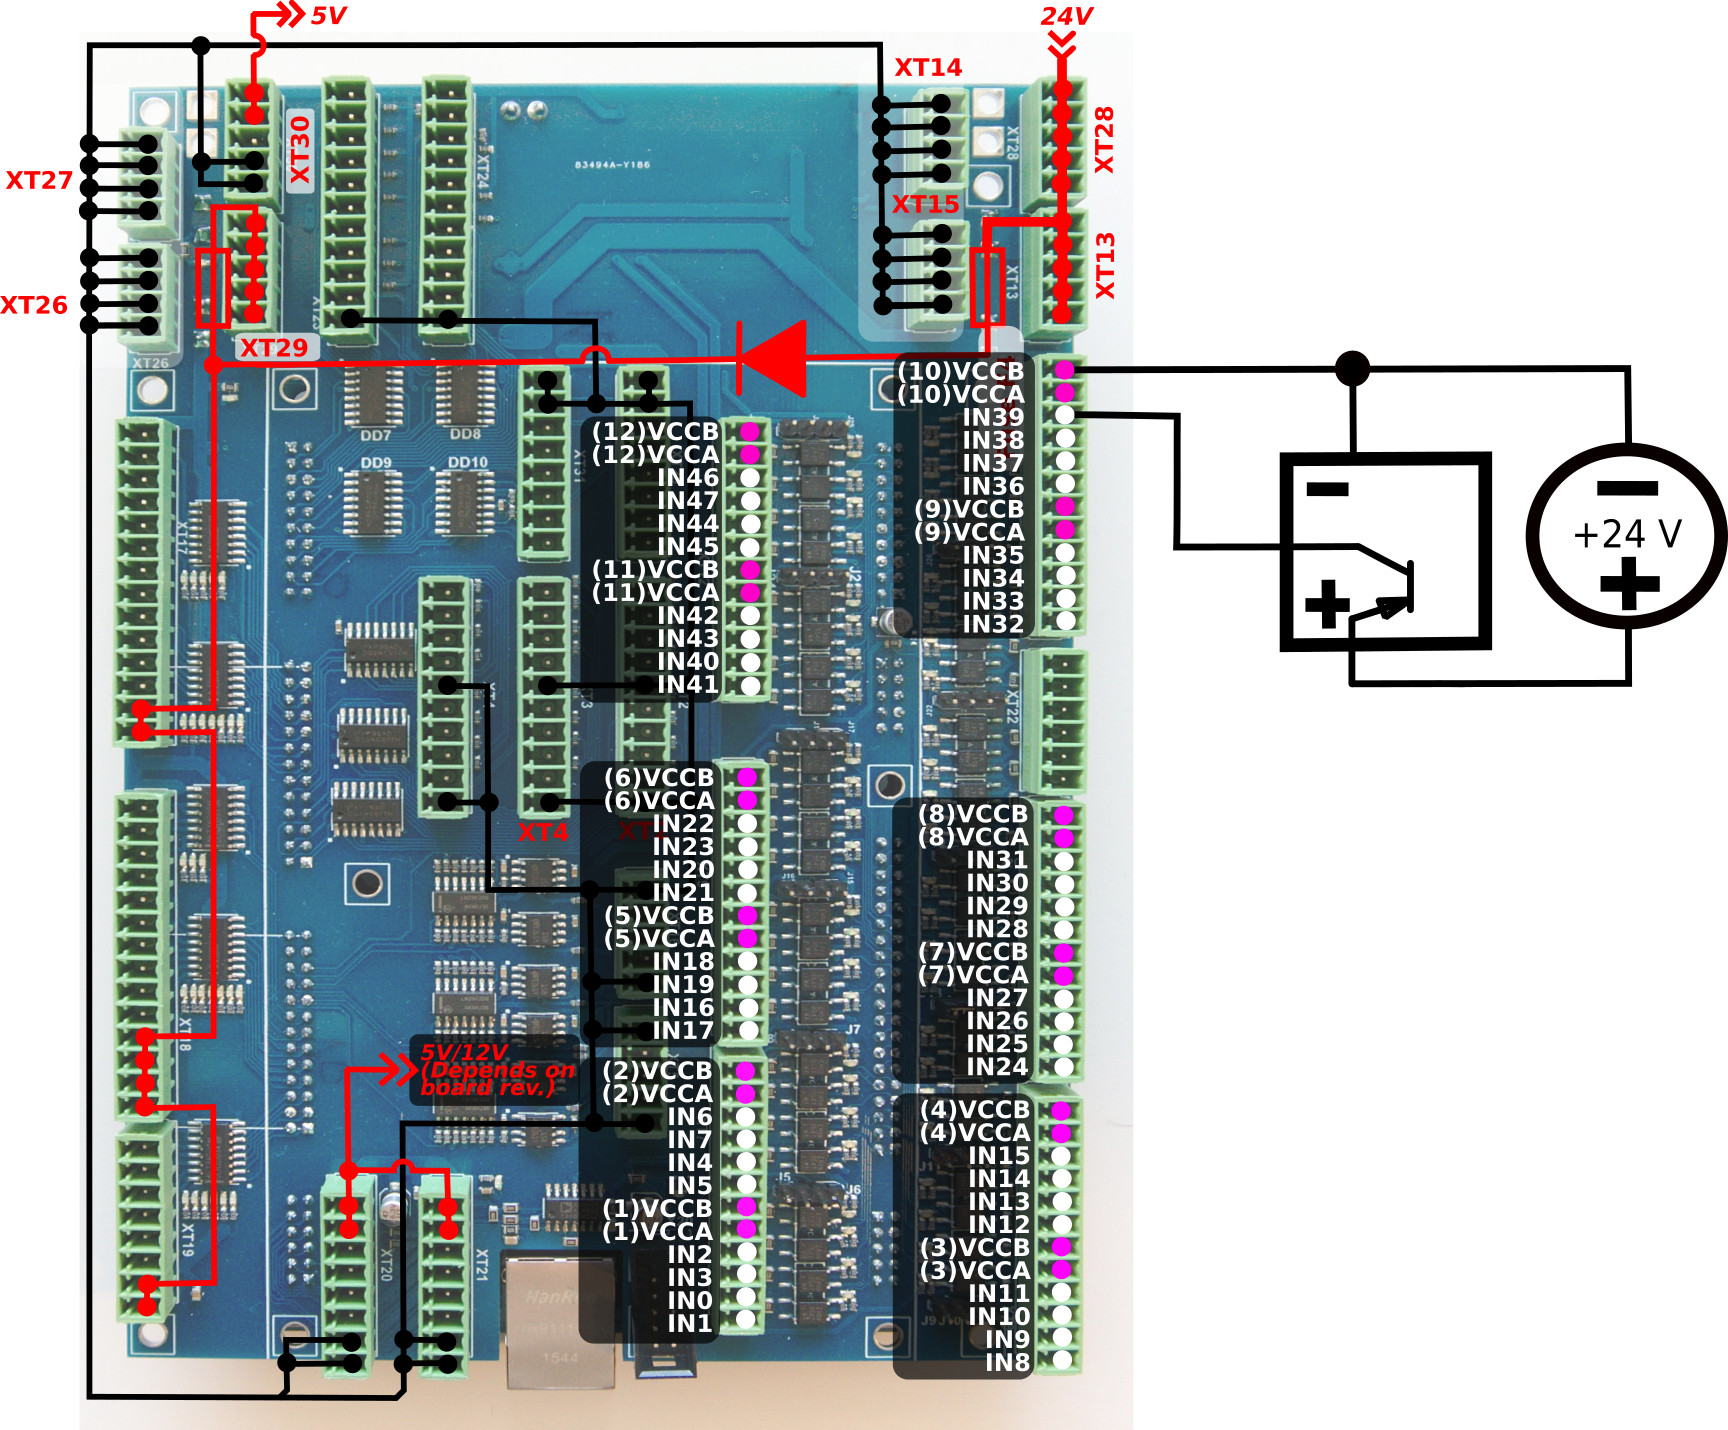 et10-connection-inputs-002-key-06-pnp-03.jpg